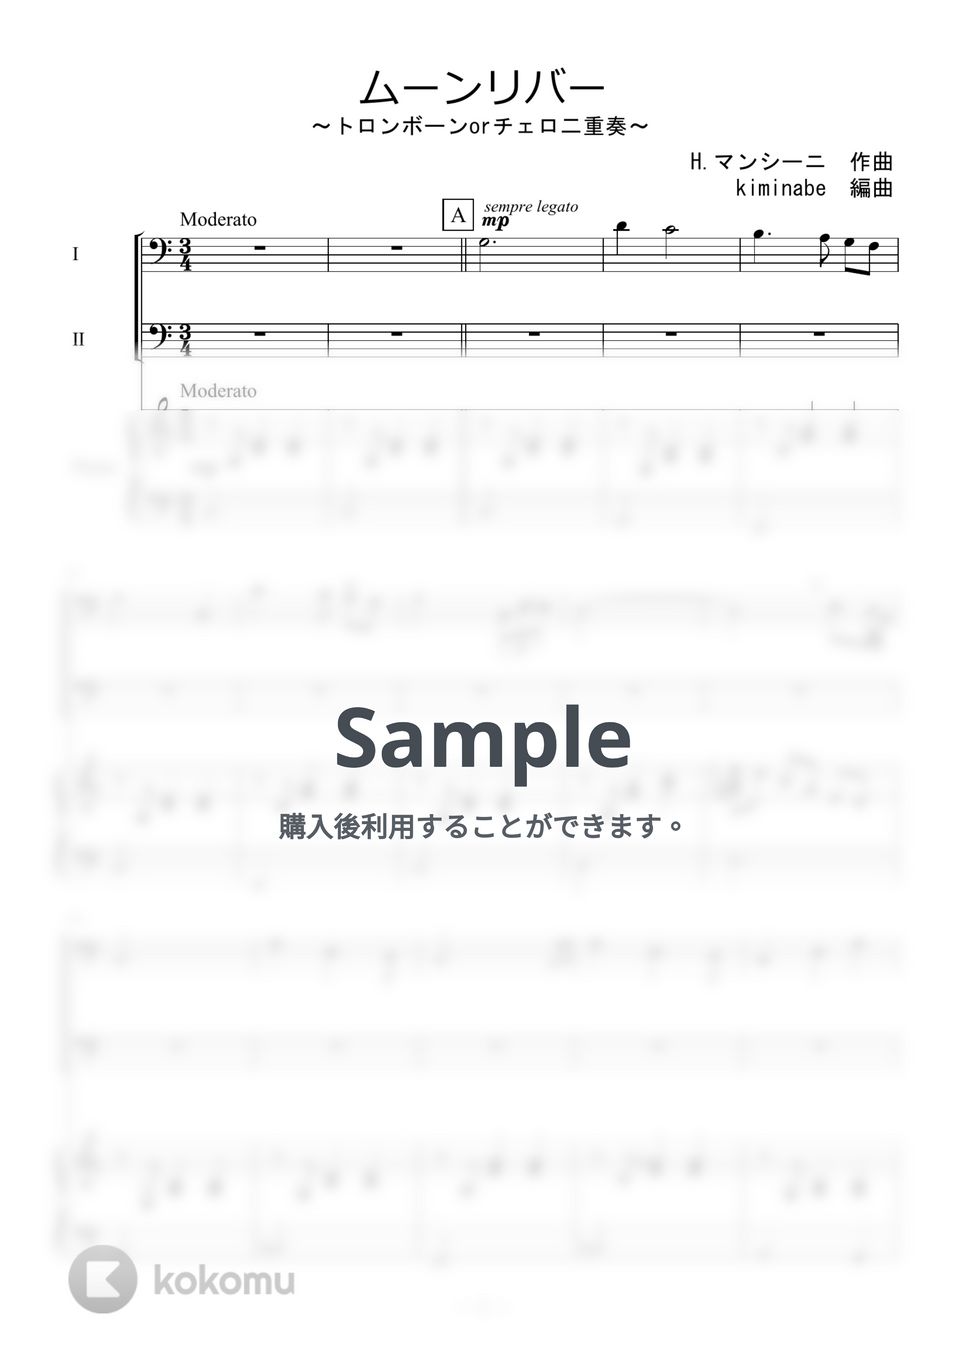 ヘンリー・マンシーニ - ムーンリバー (トロンボーンorチェロ二重奏) by kiminabe